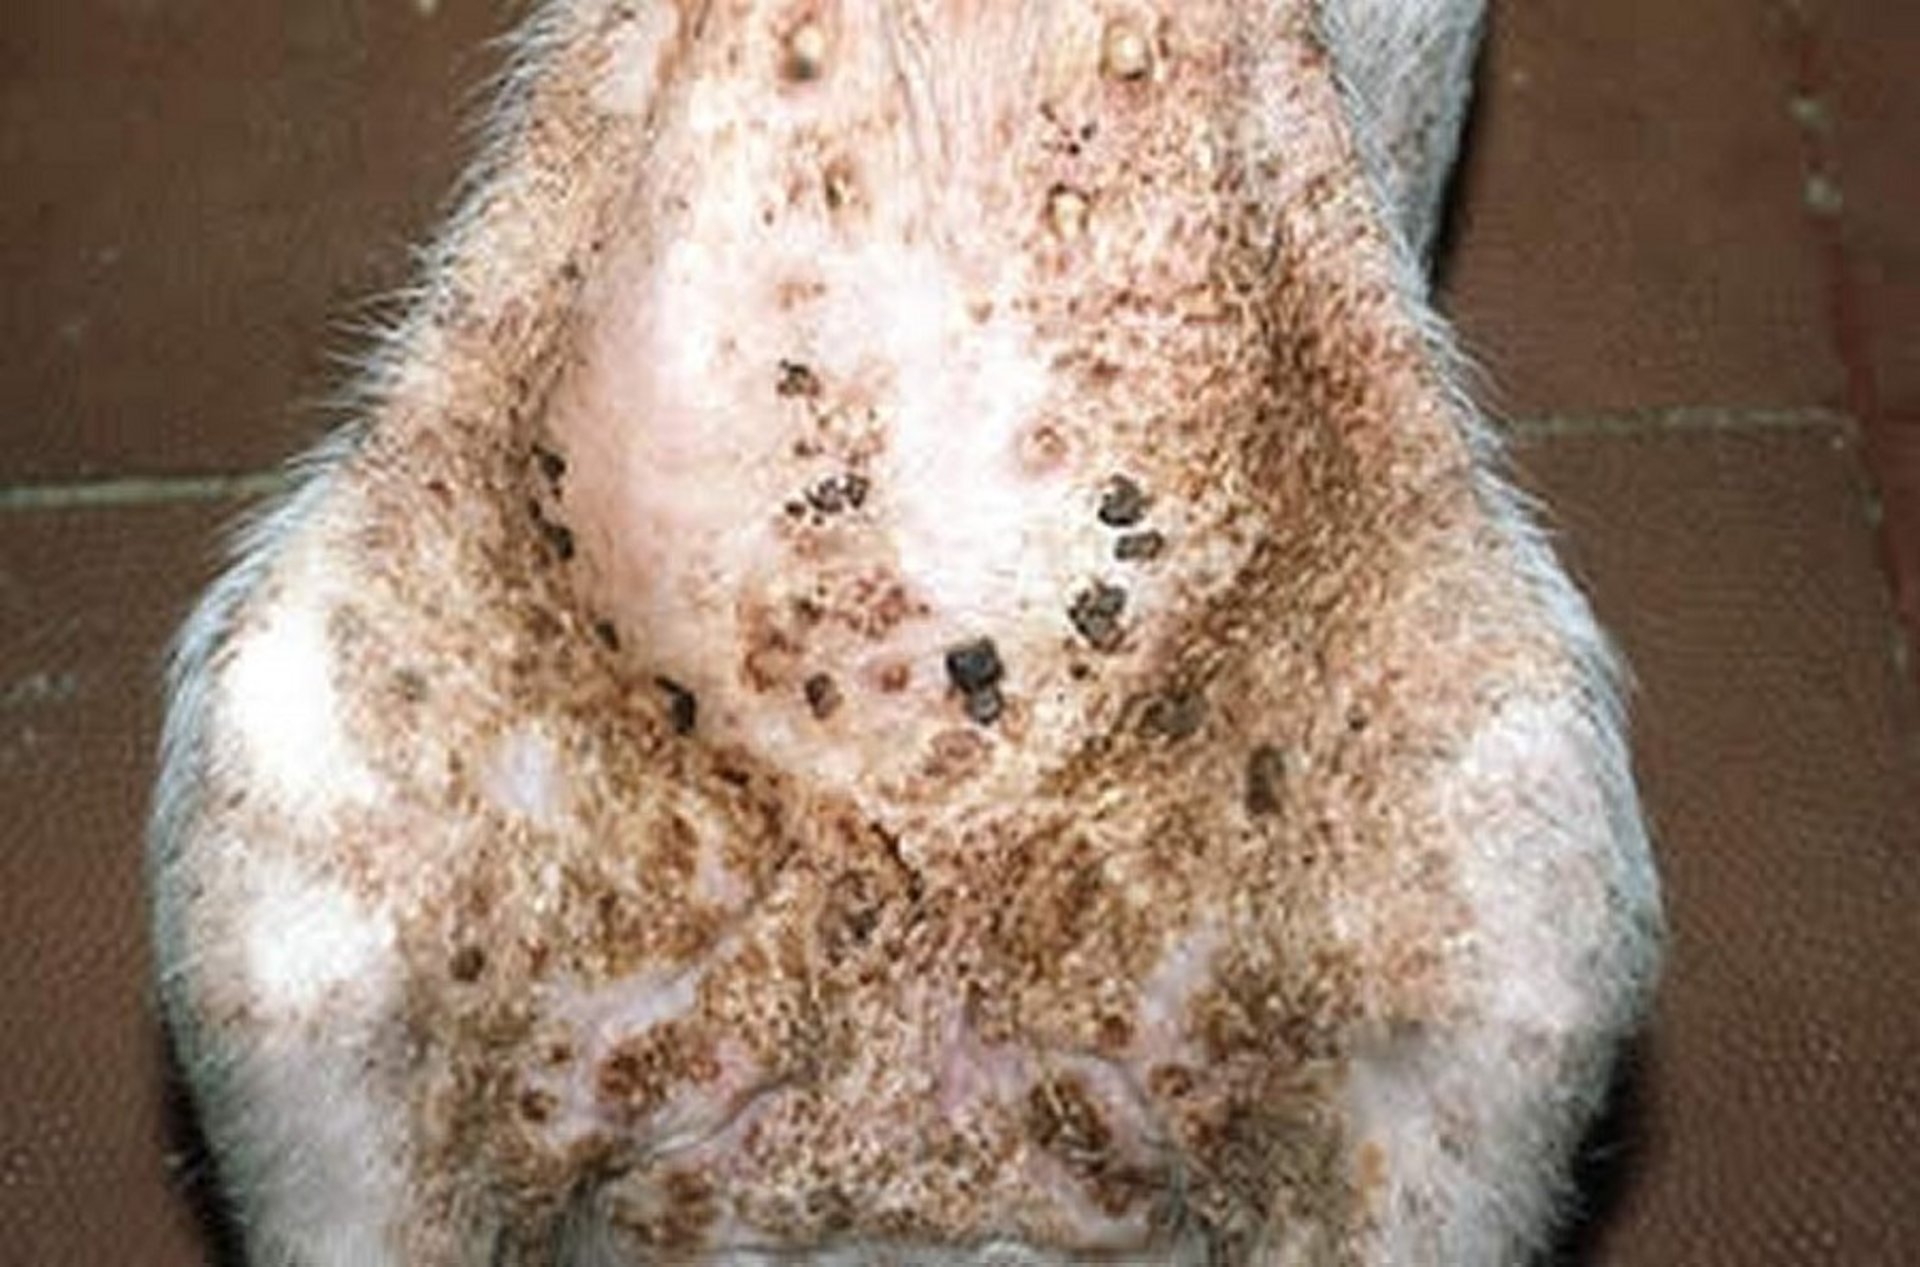 Exudative epidermitis, "greasy" lesion, pig